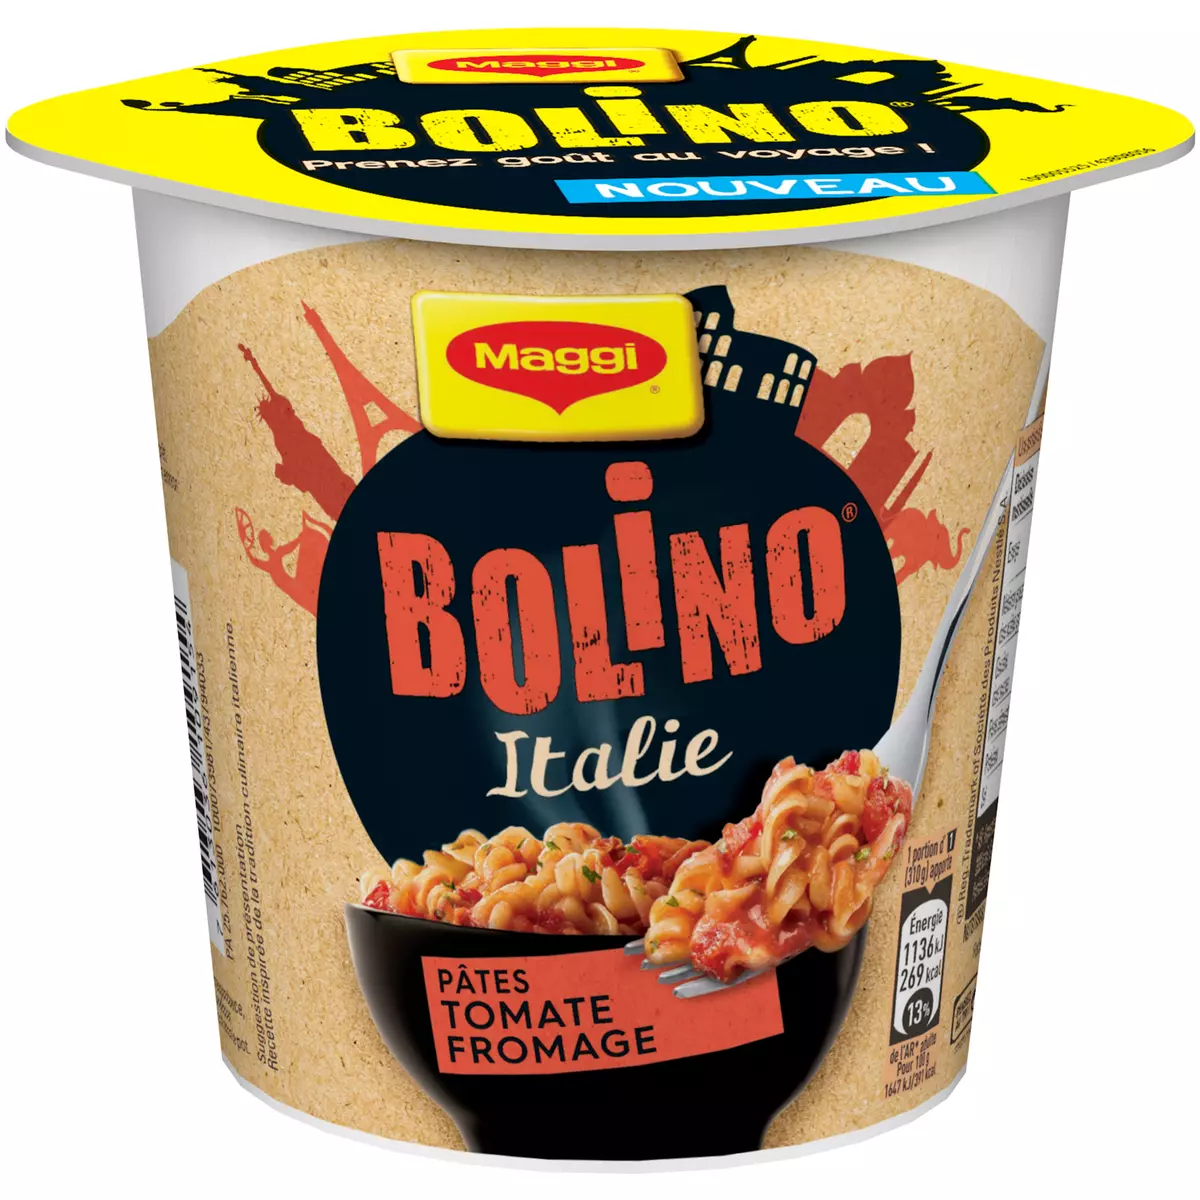 MAGGI Bolino Italie cup de pâtes tomate fromage 1 personne 69g